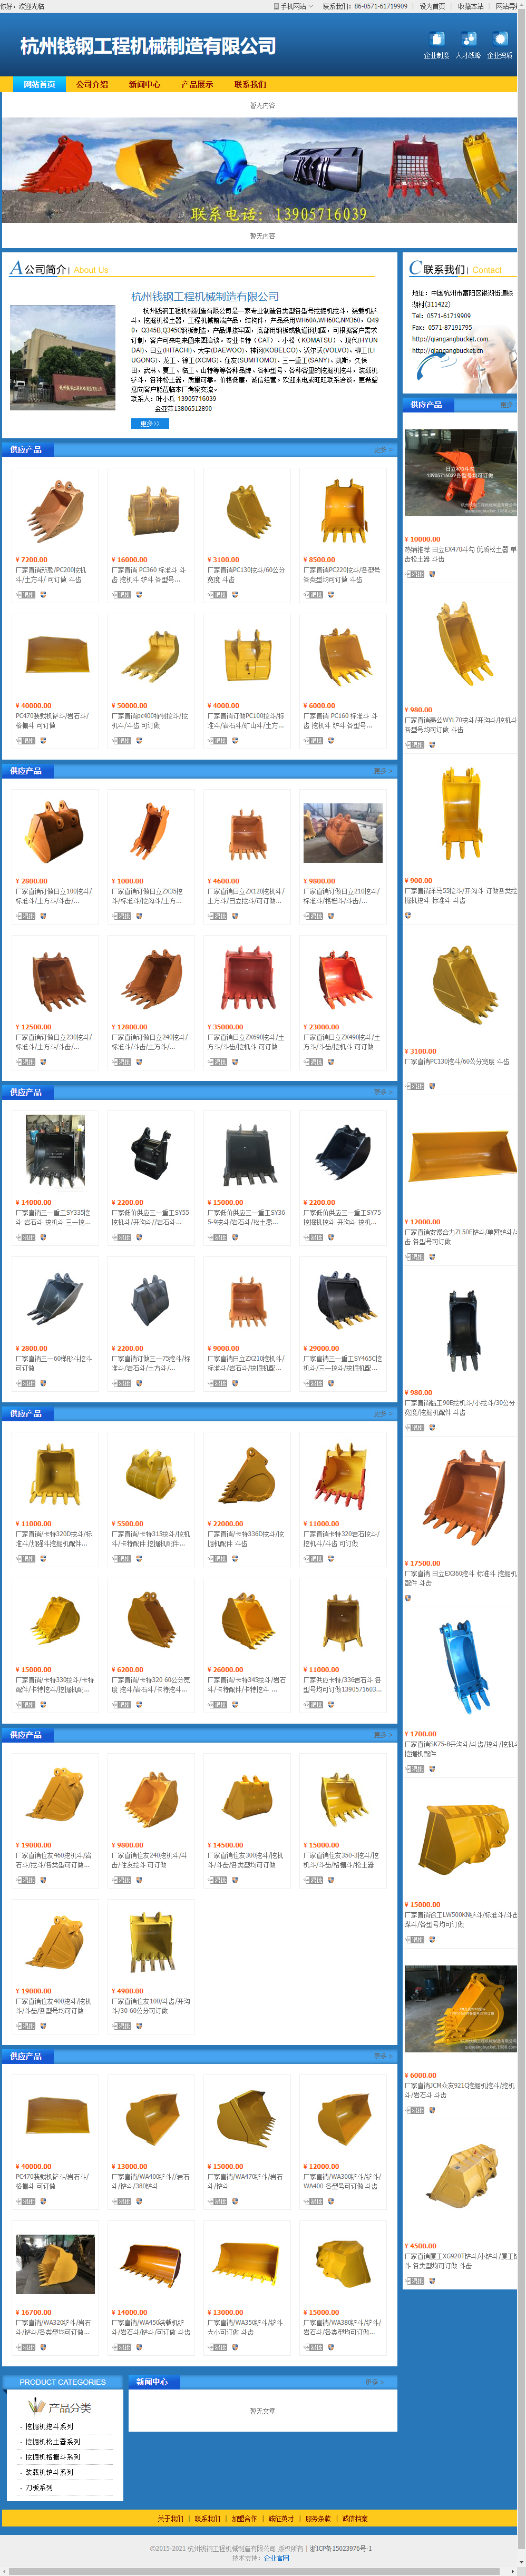 杭州钱钢工程机械制造有限公司网站案例